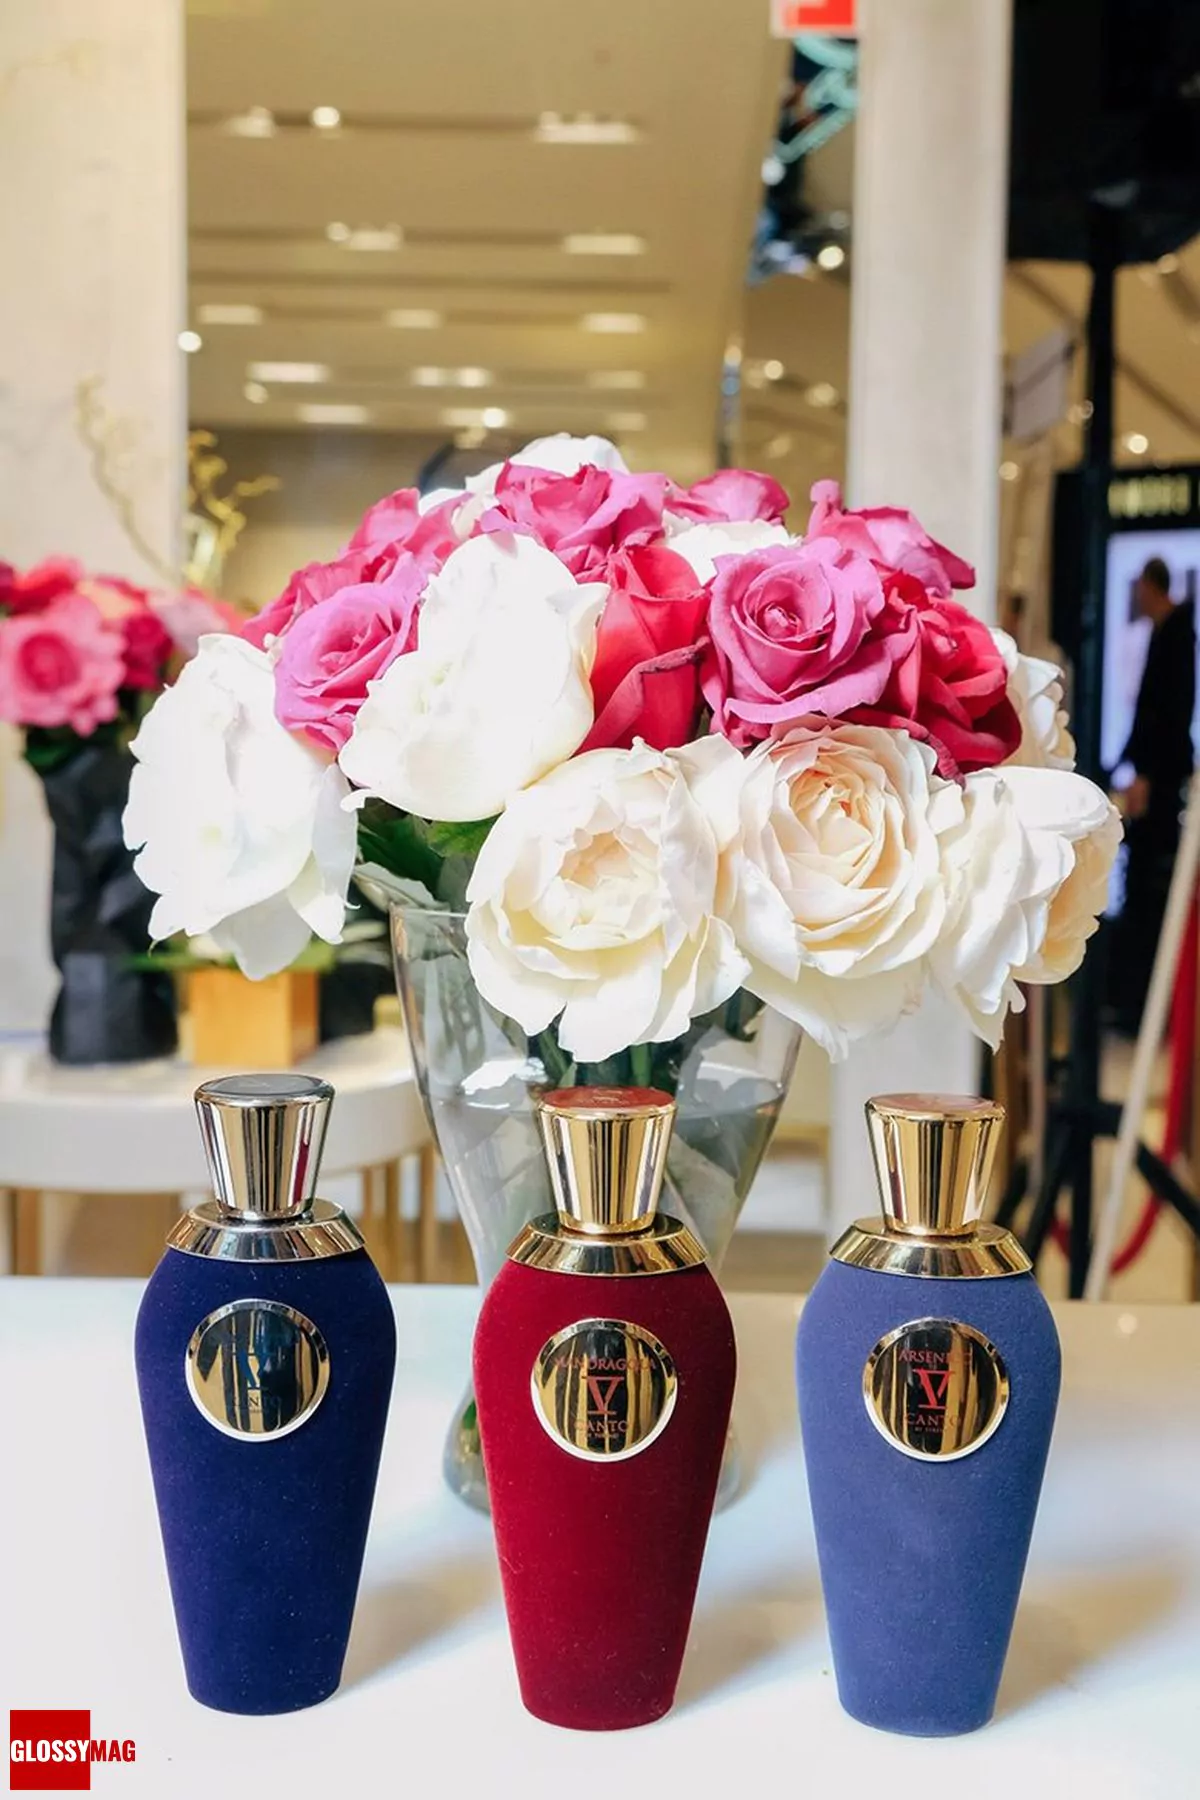 Громкое открытие корнера итальянского парфюмерного бренда Tiziana Terenzi, фото 9